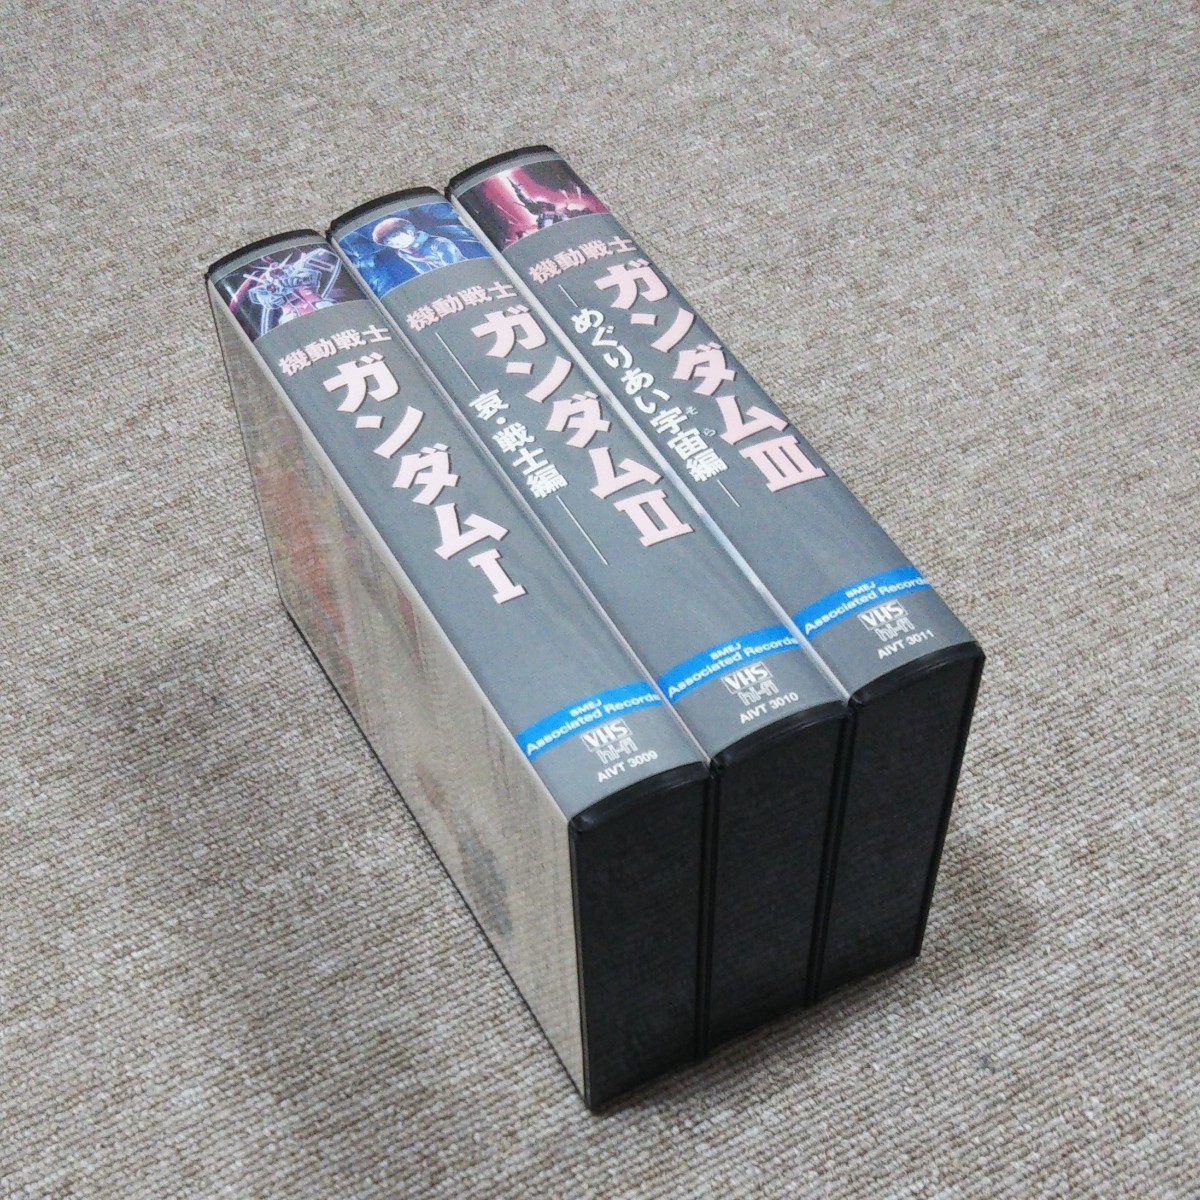 機動戦士ガンダム VHS 3本セット